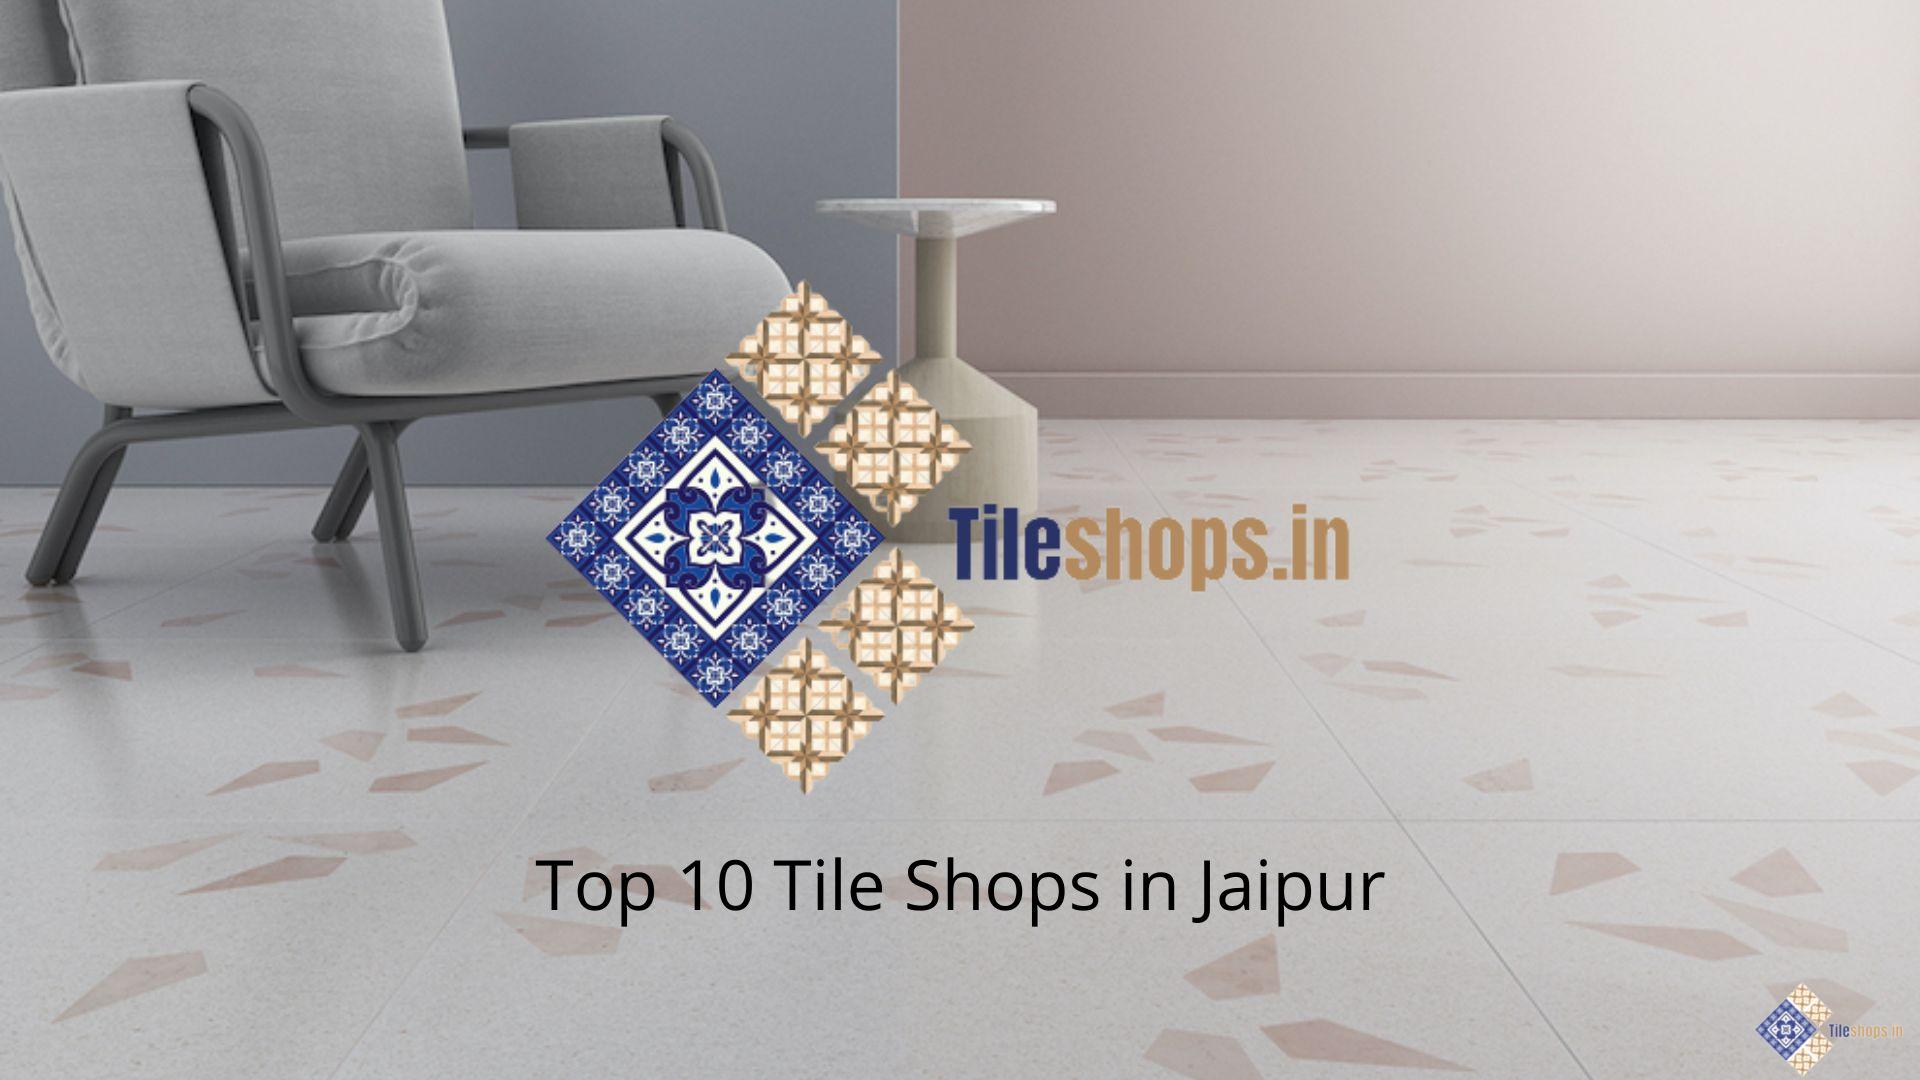 Top 10 Tile Shops in Jaipur